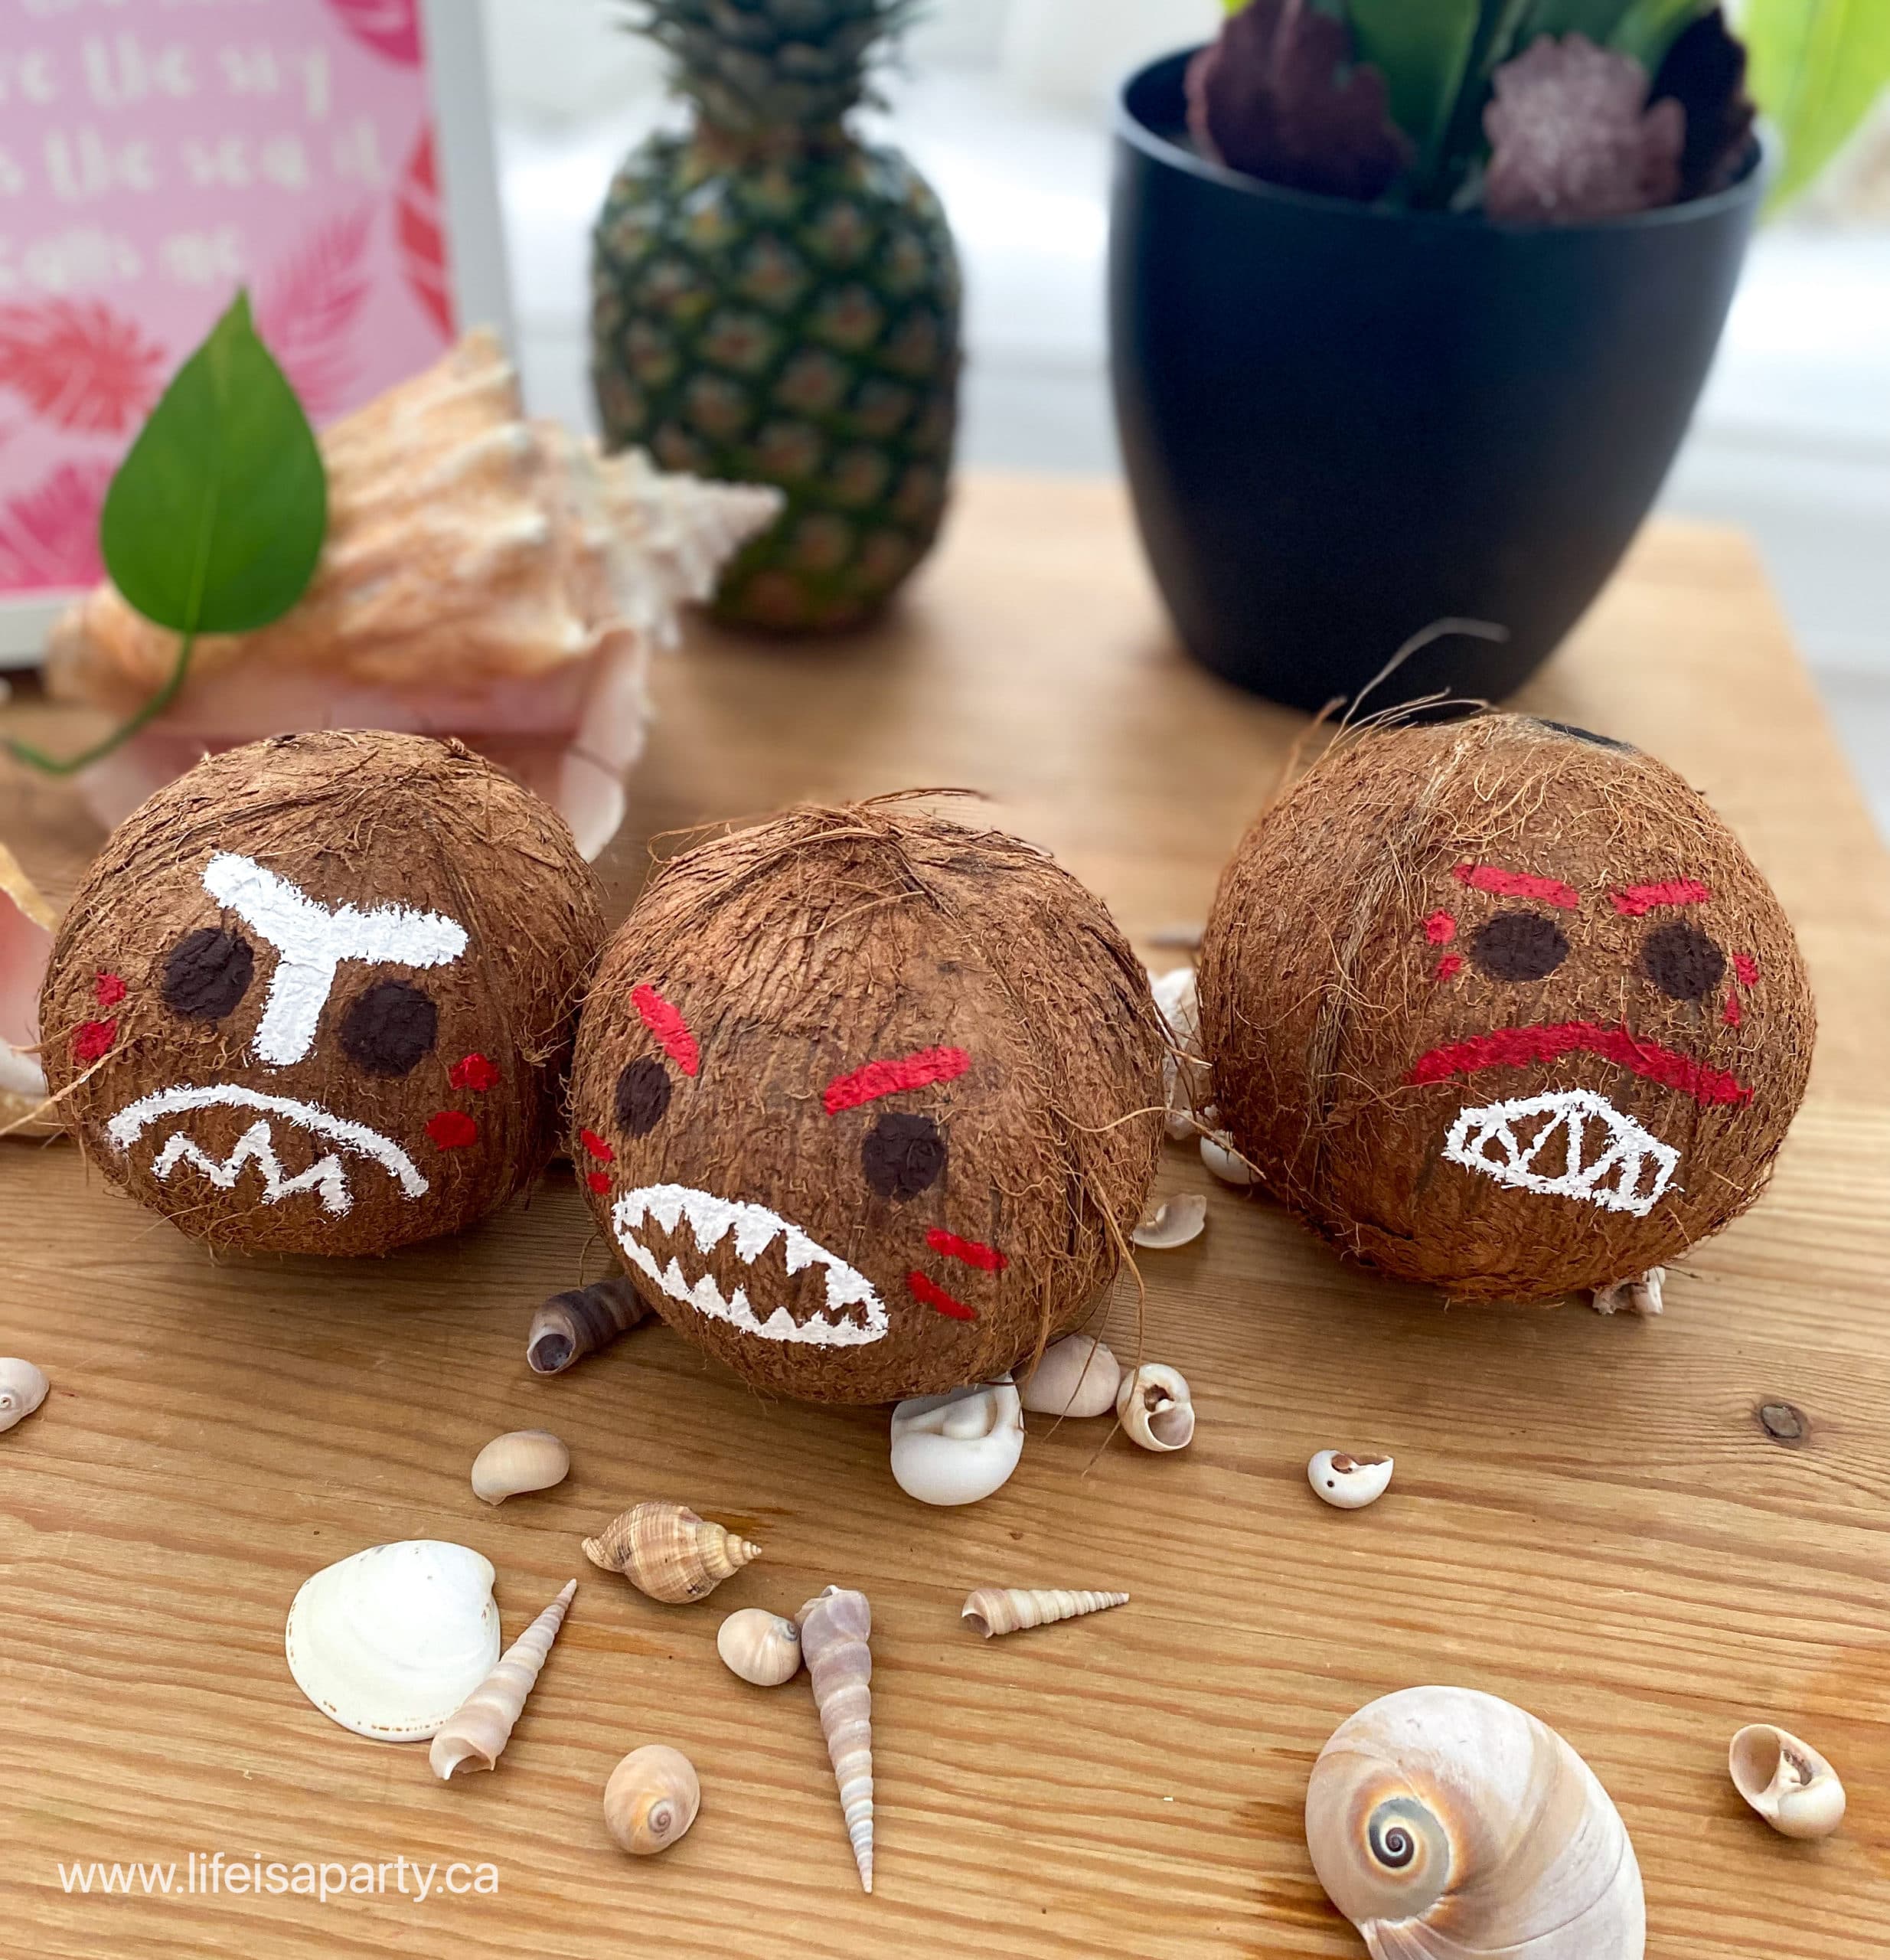 Moana party decorations DIY Kakamora coconut pirates